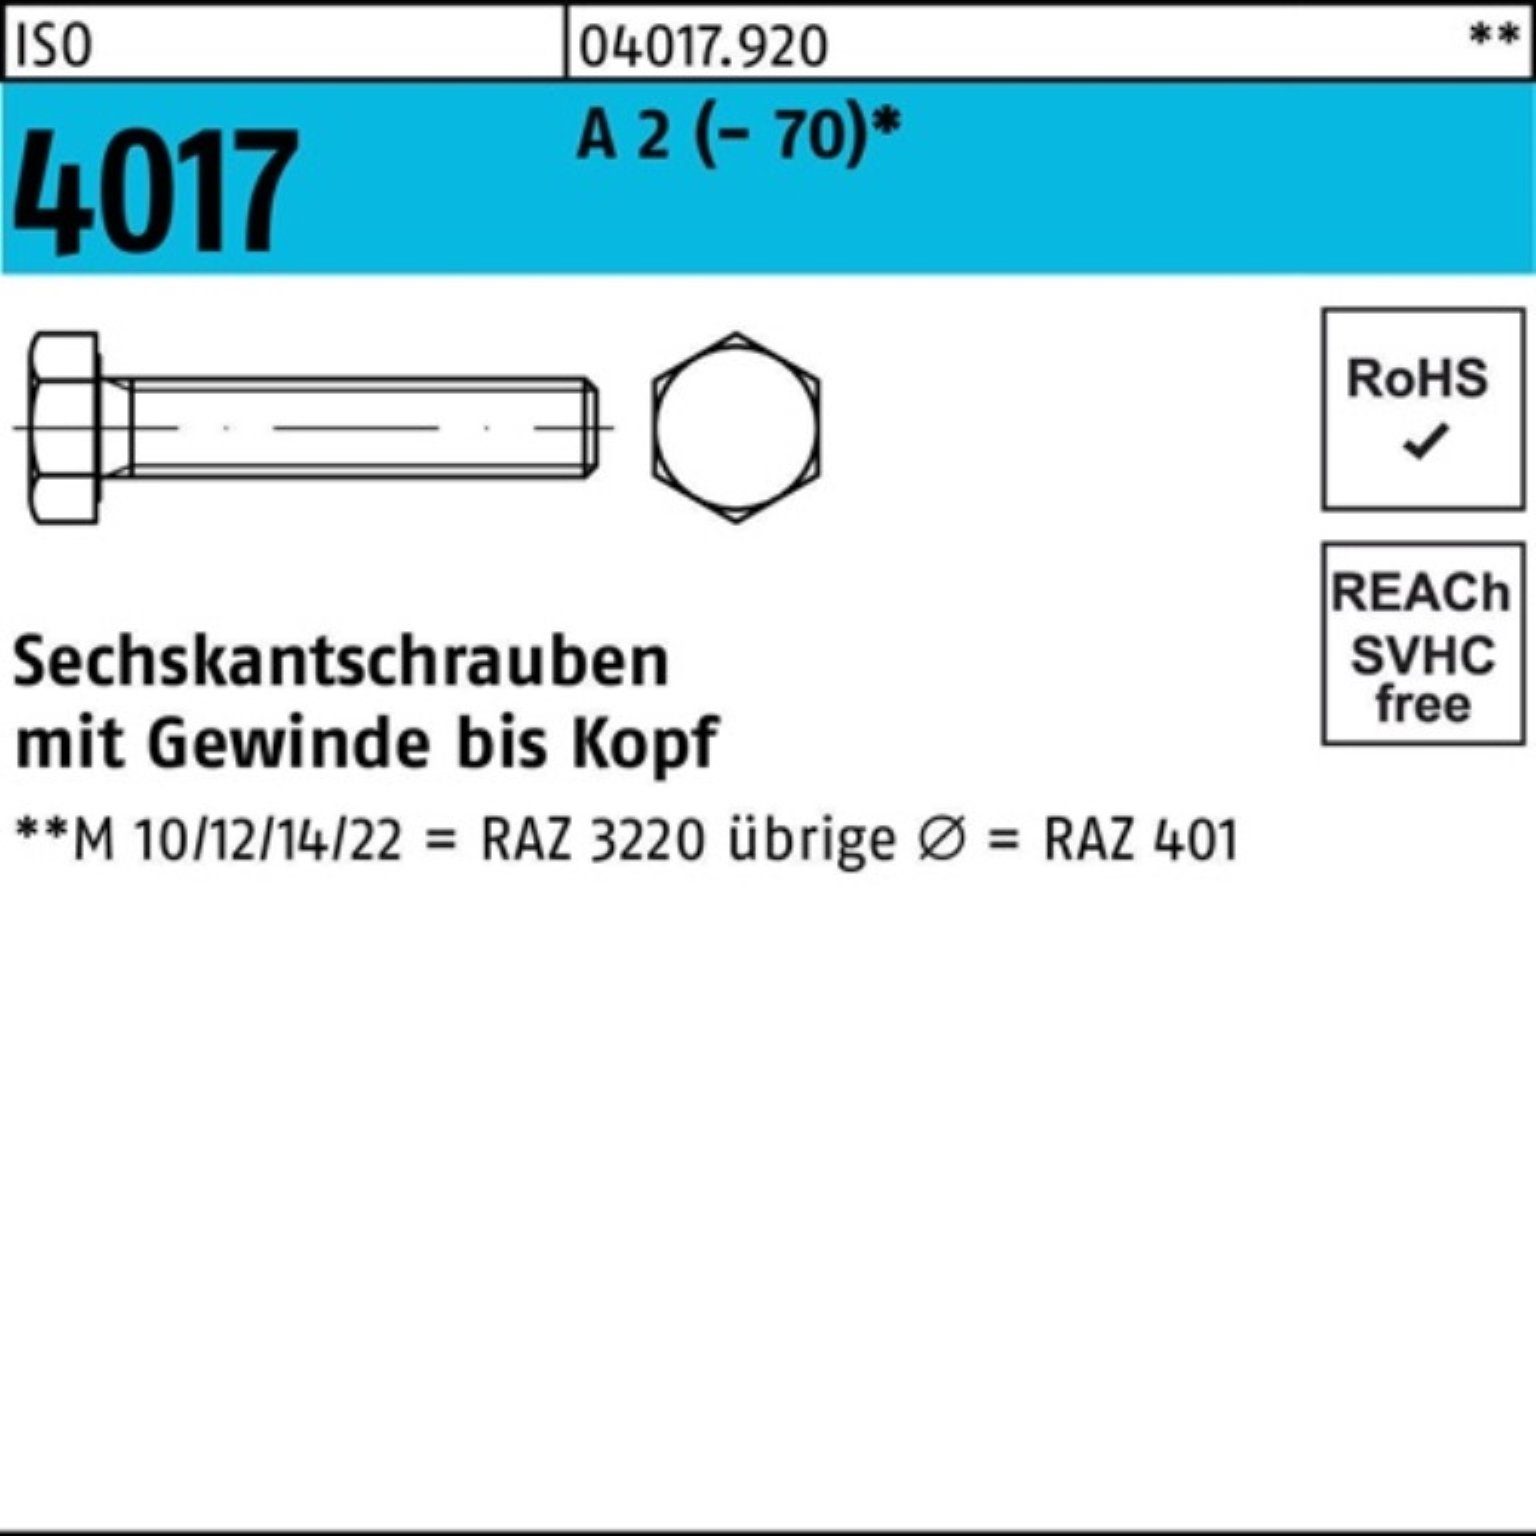 Bufab Sechskantschraube 100er 4017 2 VG M16x 10 A Stück (70) 200 Sechskantschraube ISO Pack